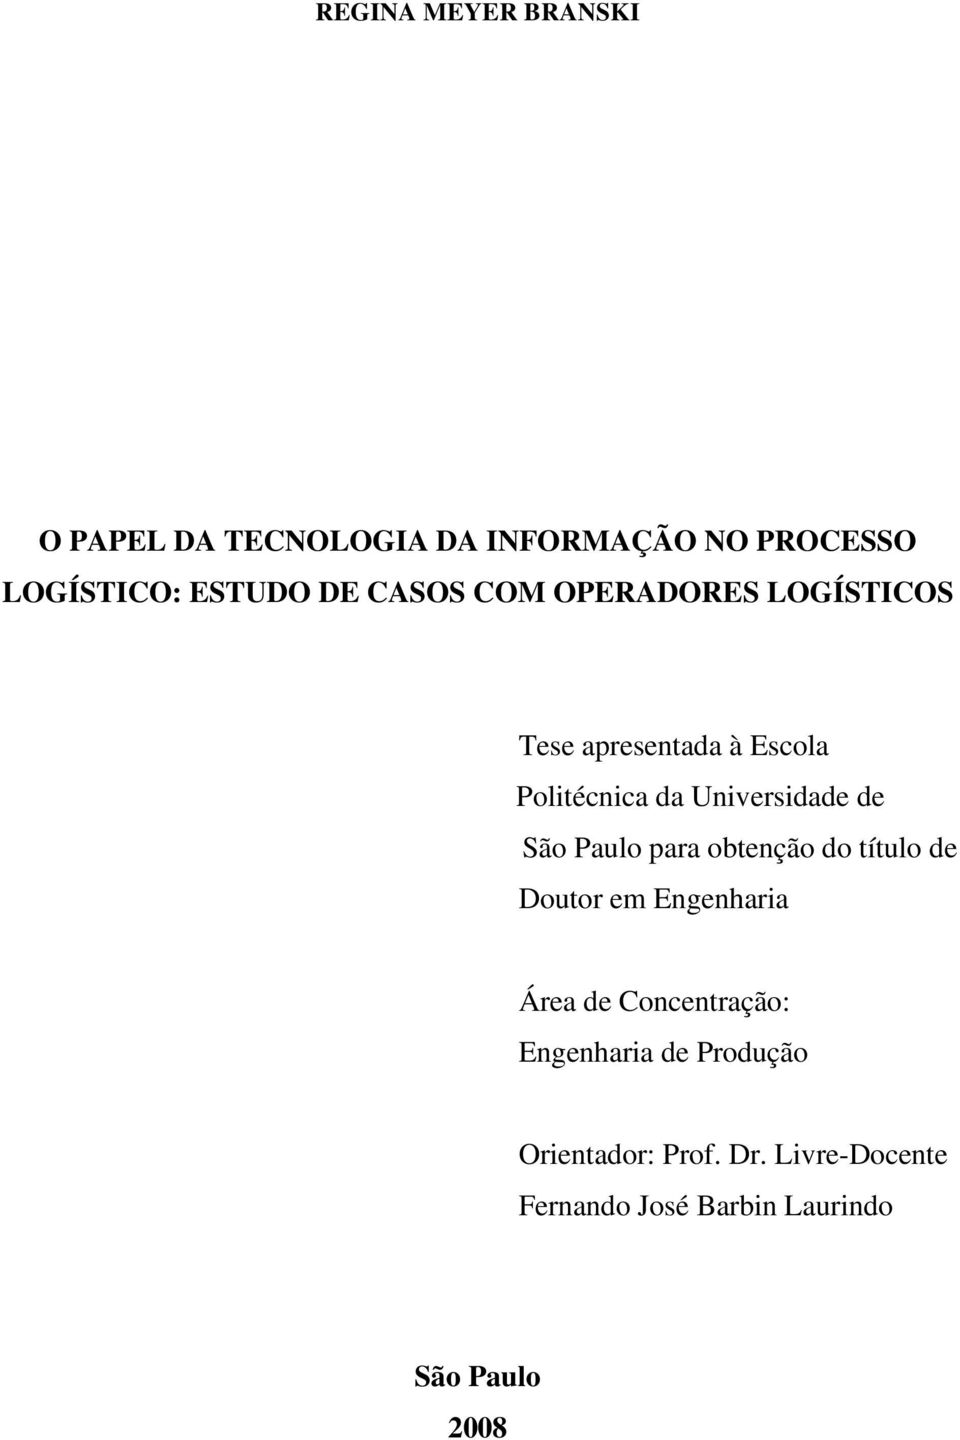 São Paulo para obtenção do título de Doutor em Engenharia Área de Concentração: Engenharia